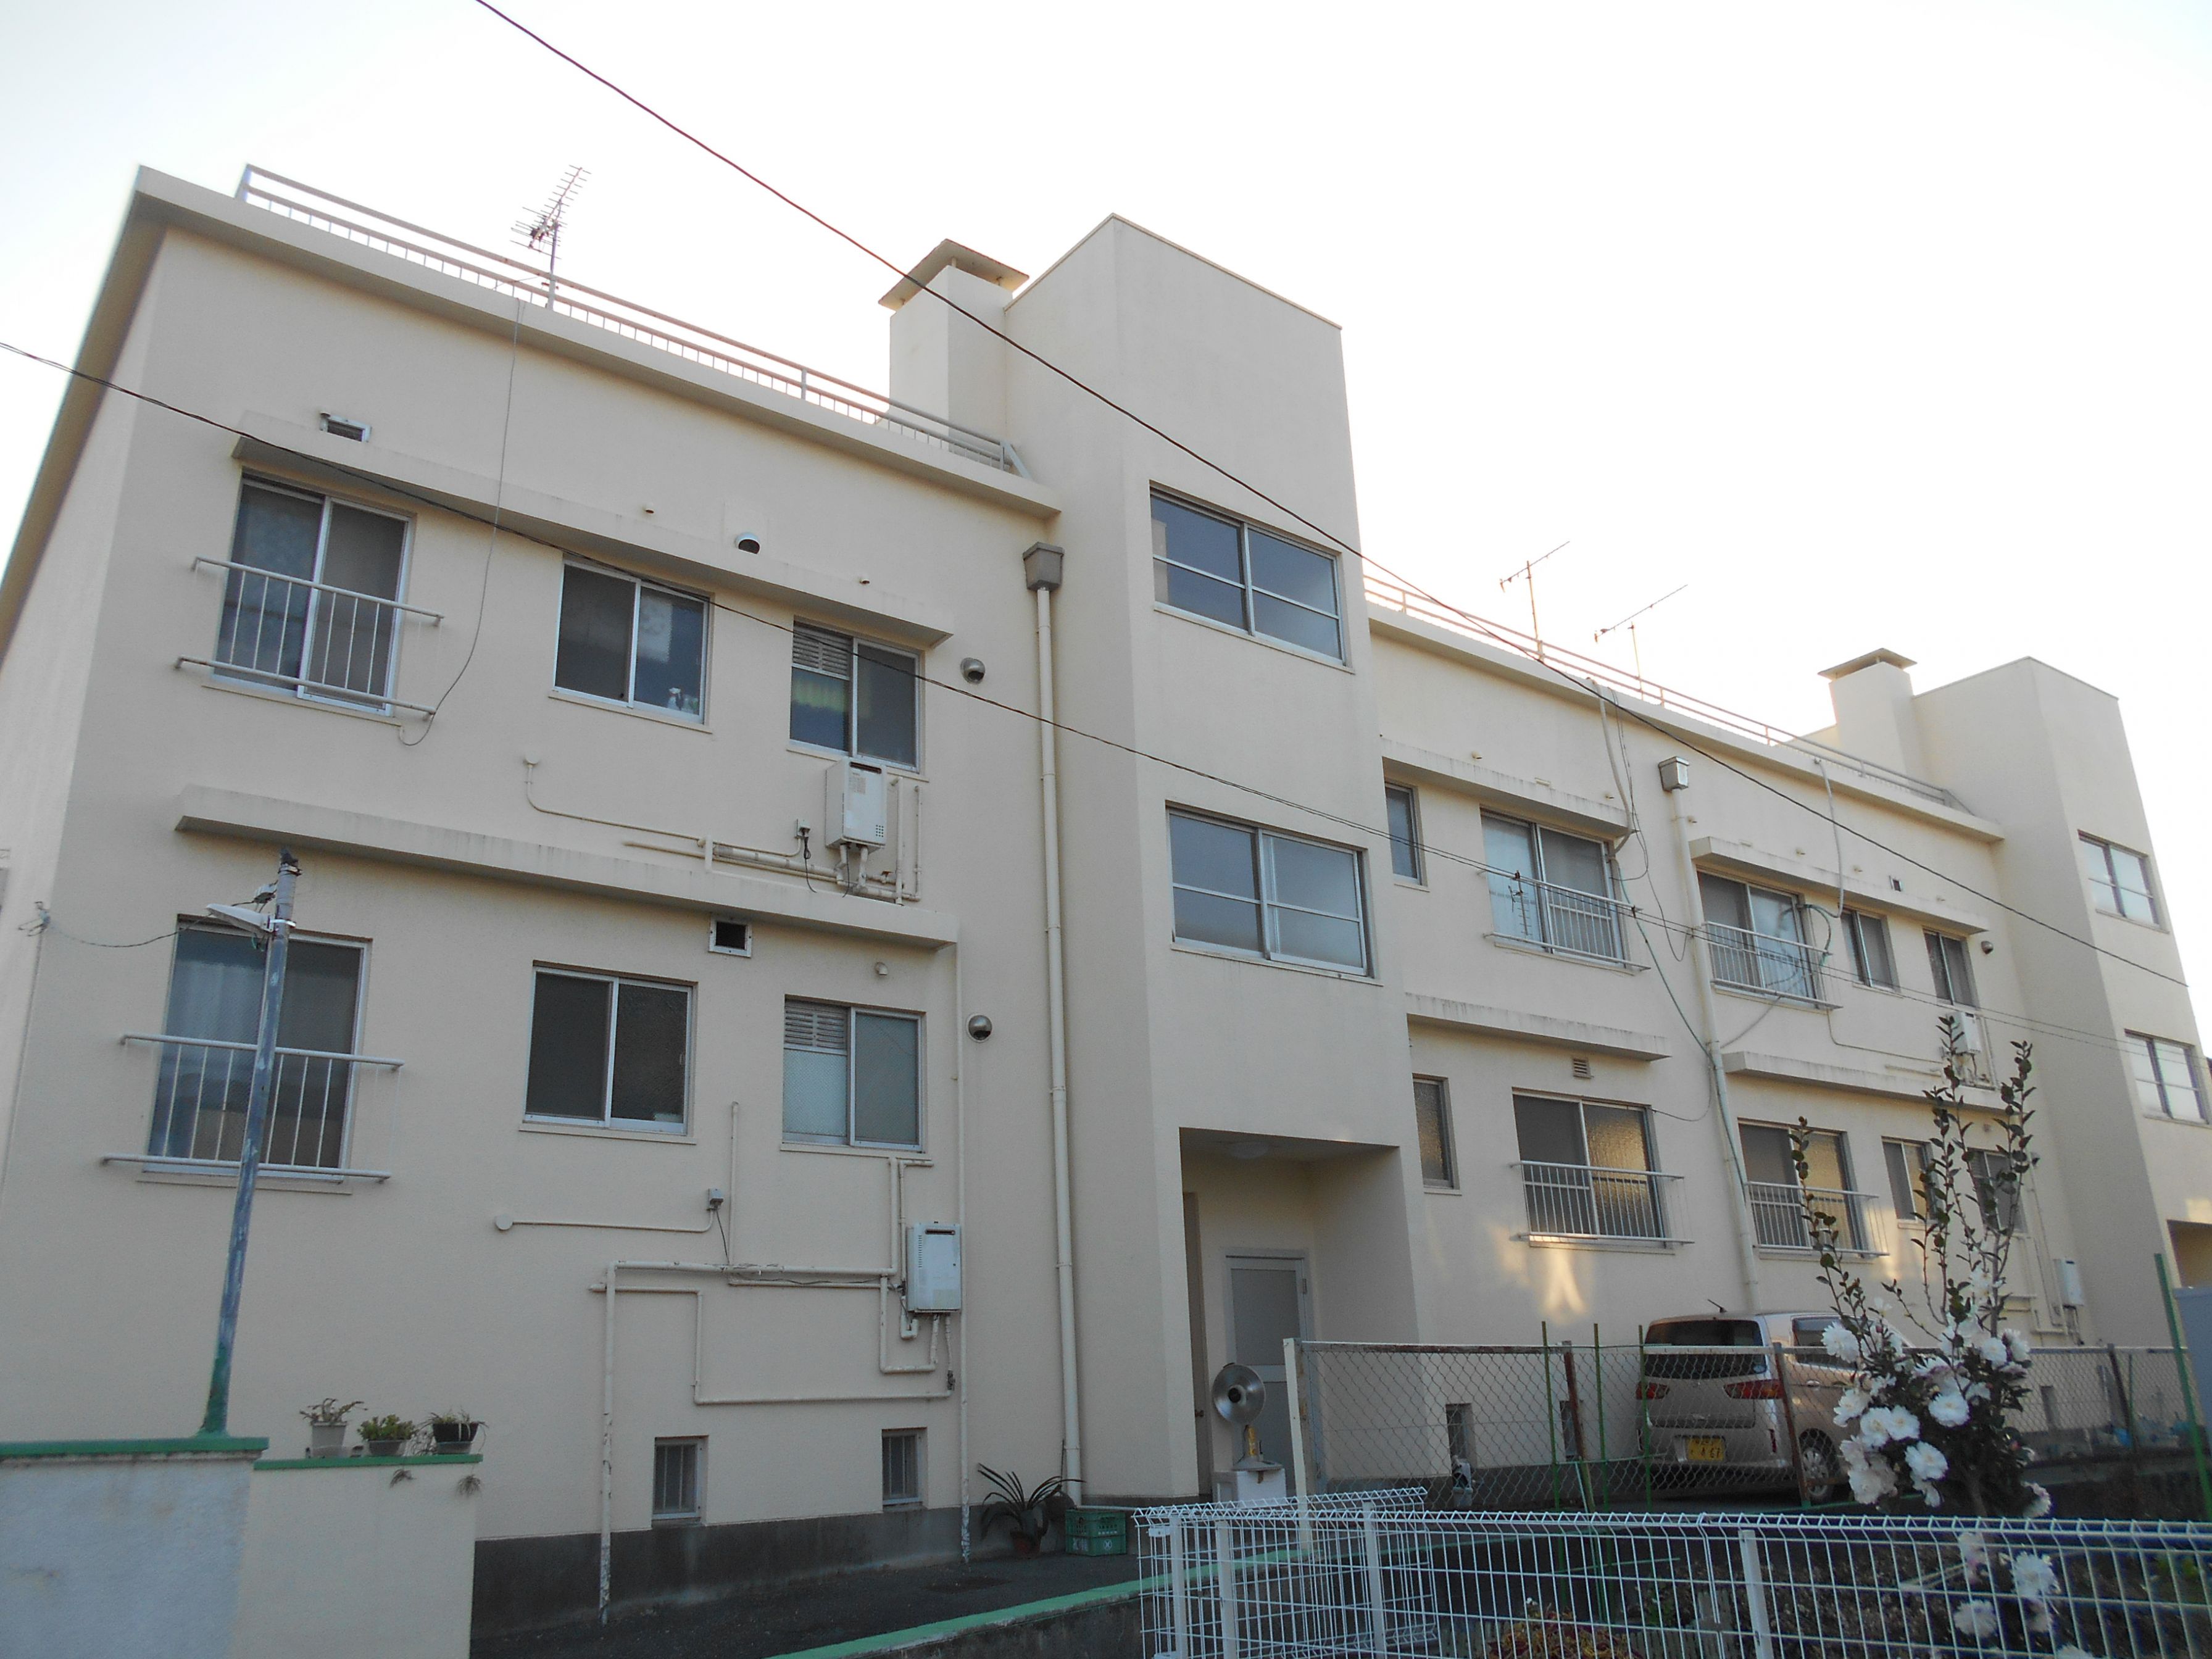 ふれんず 大牟田市の中古マンション 新築マンション検索結果 価格 500万円以下